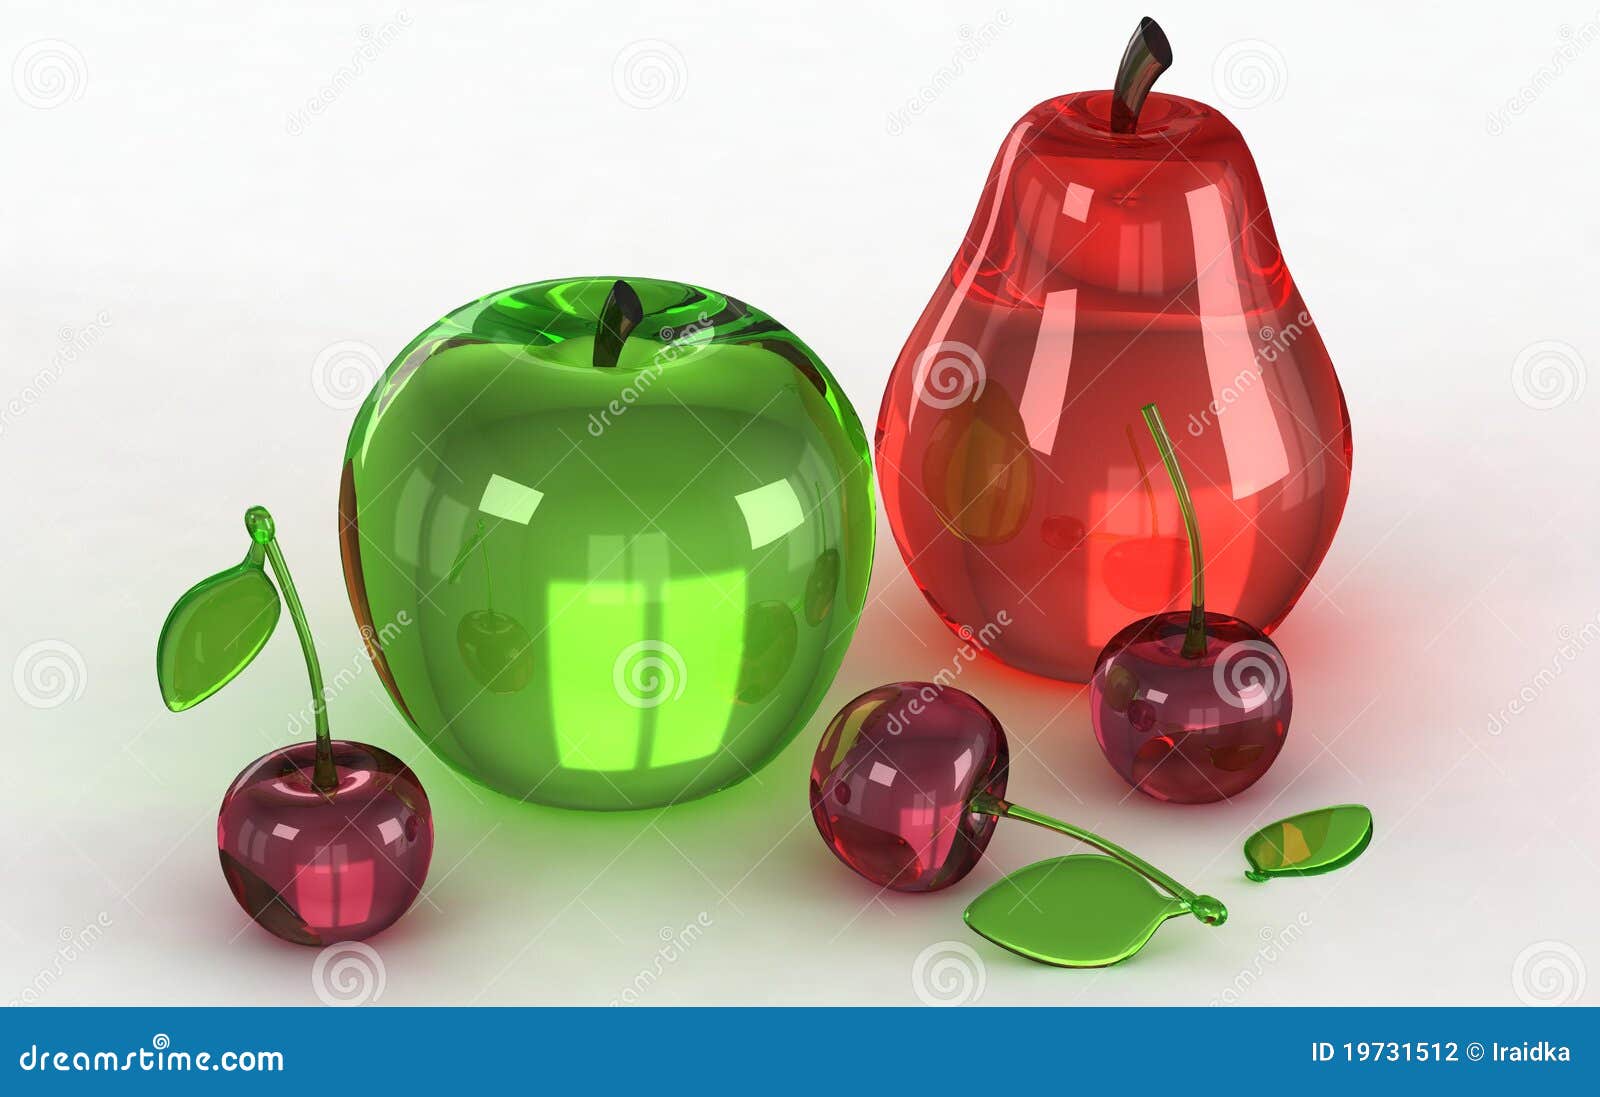 Как приготовить фрукты в стекле в домашних. Стеклянные фрукты. Декоративные фрукты из стекла. Фрукты в стекле. Фрукты и овощи из стекла.